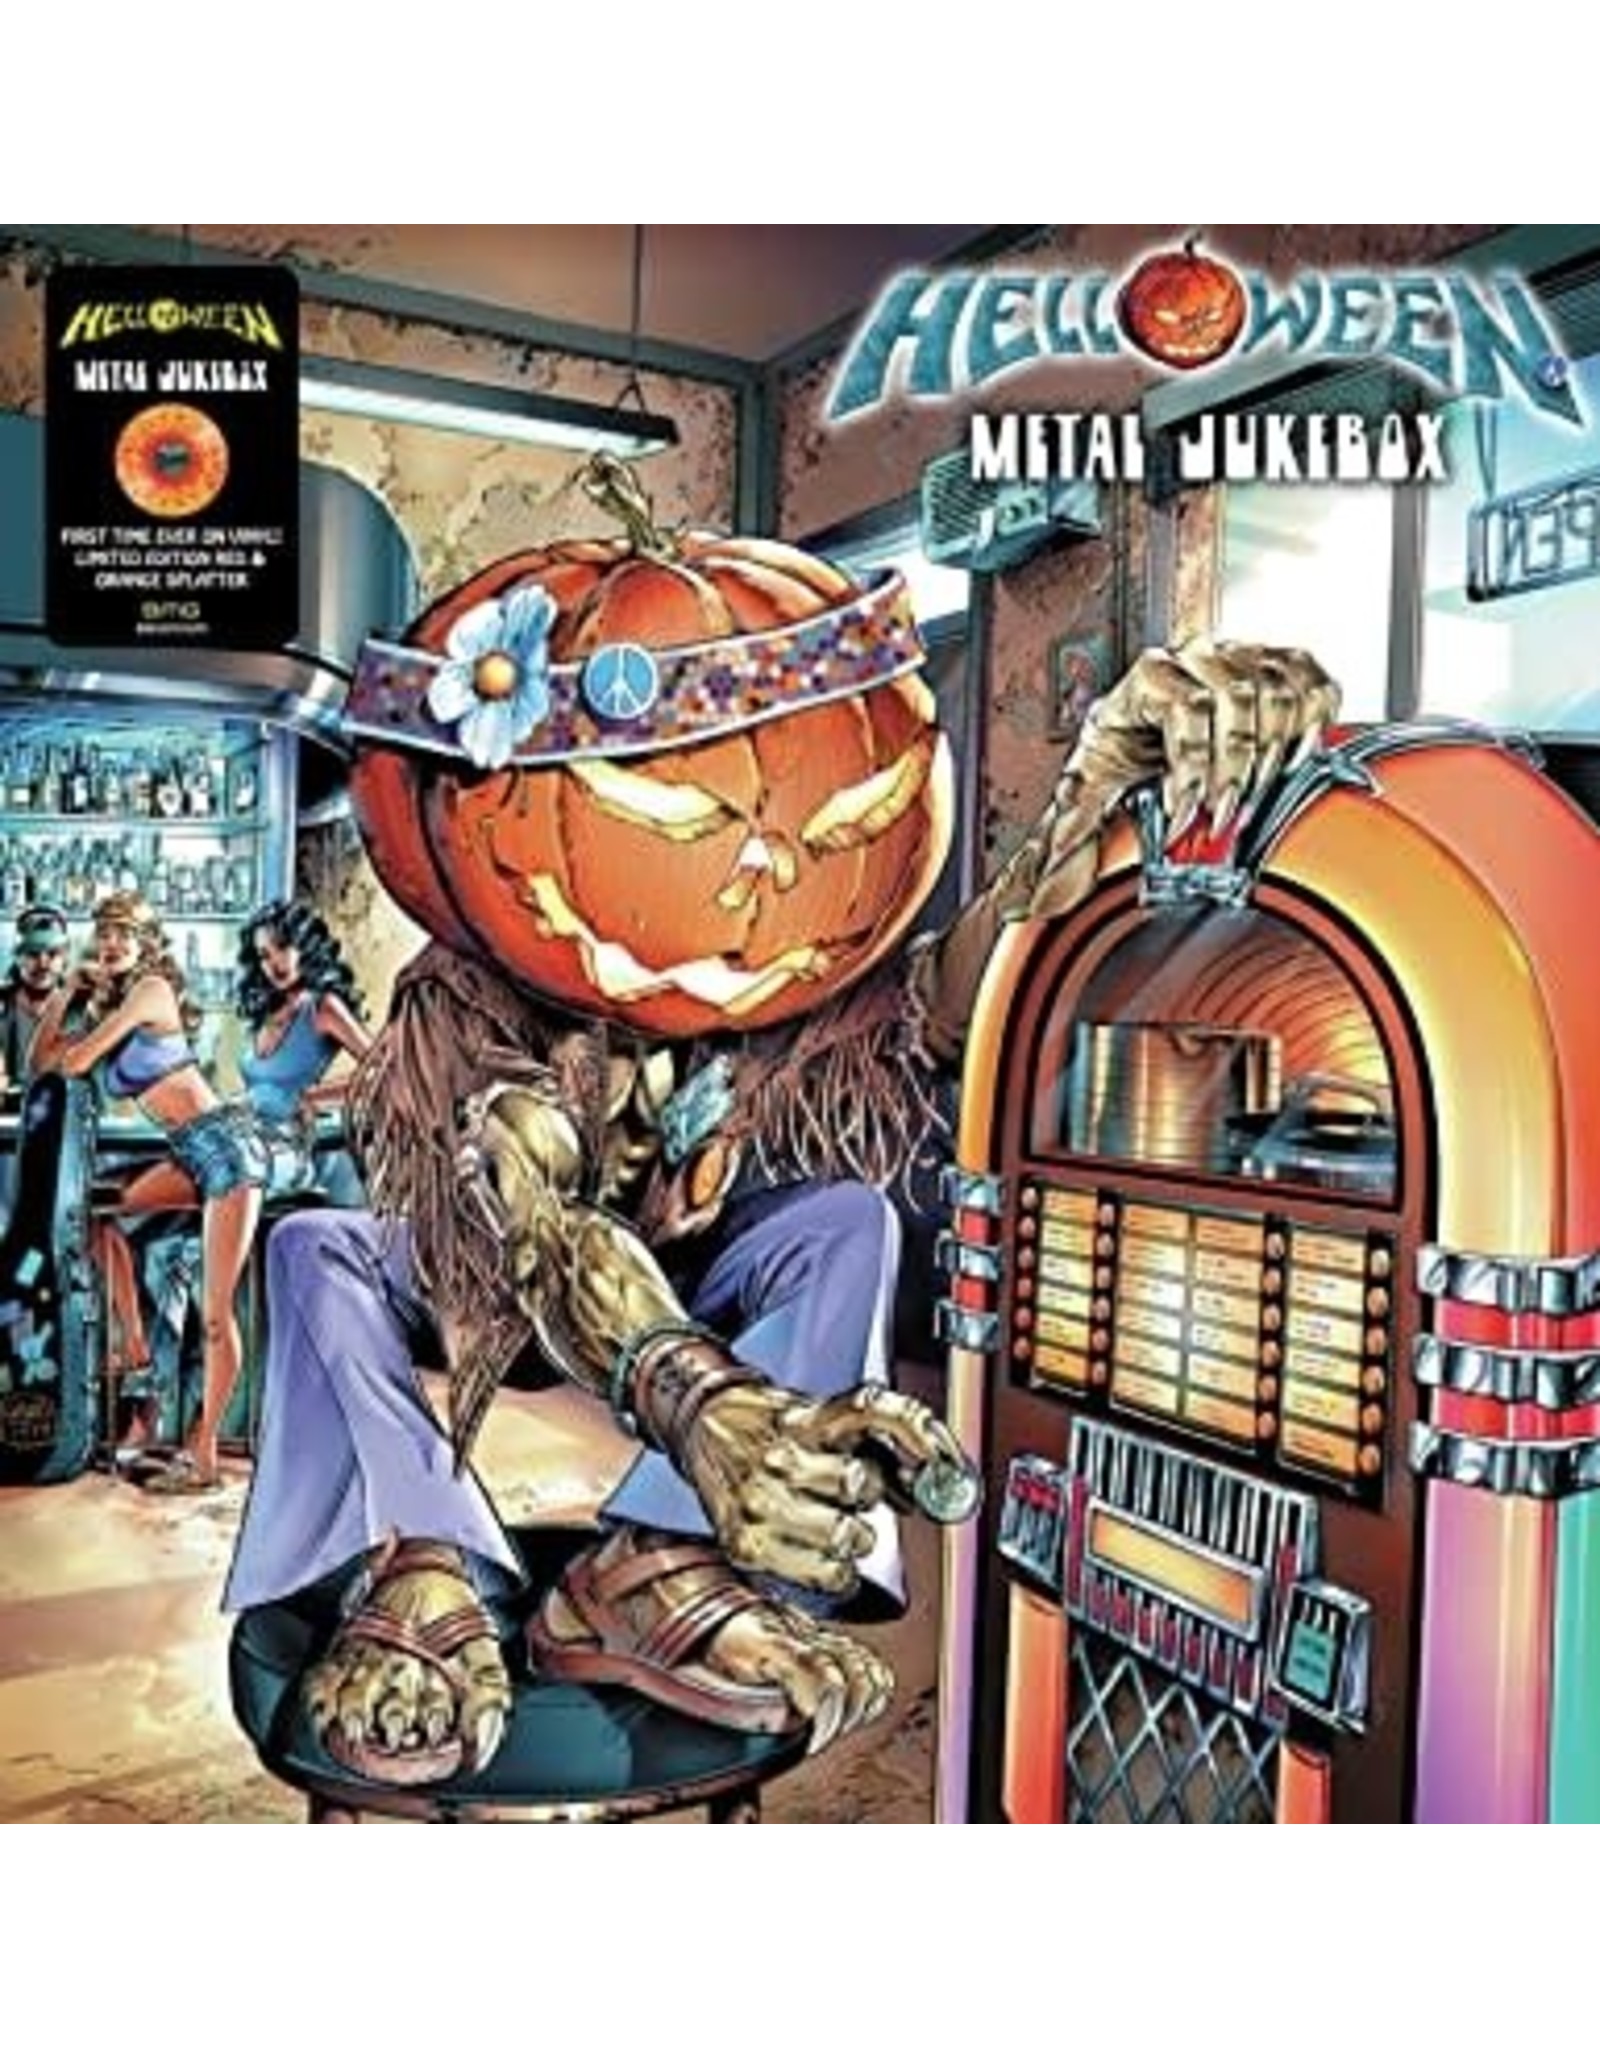 Helloween - Metal Jukebox LP